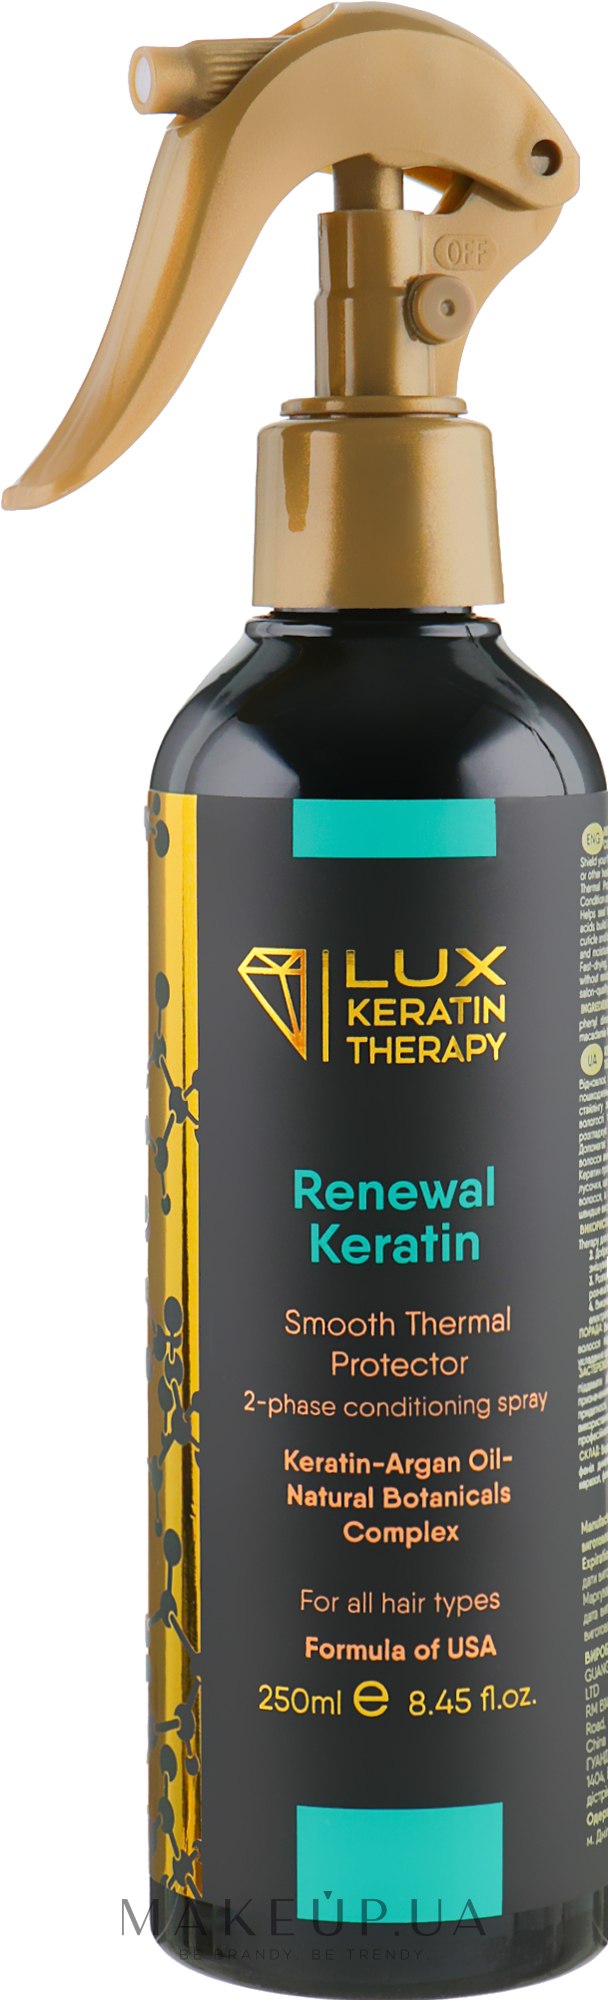 Двофазний спрей-термозахист для волосся - Lux Keratin Therapy Renewal Keratin — фото 250ml